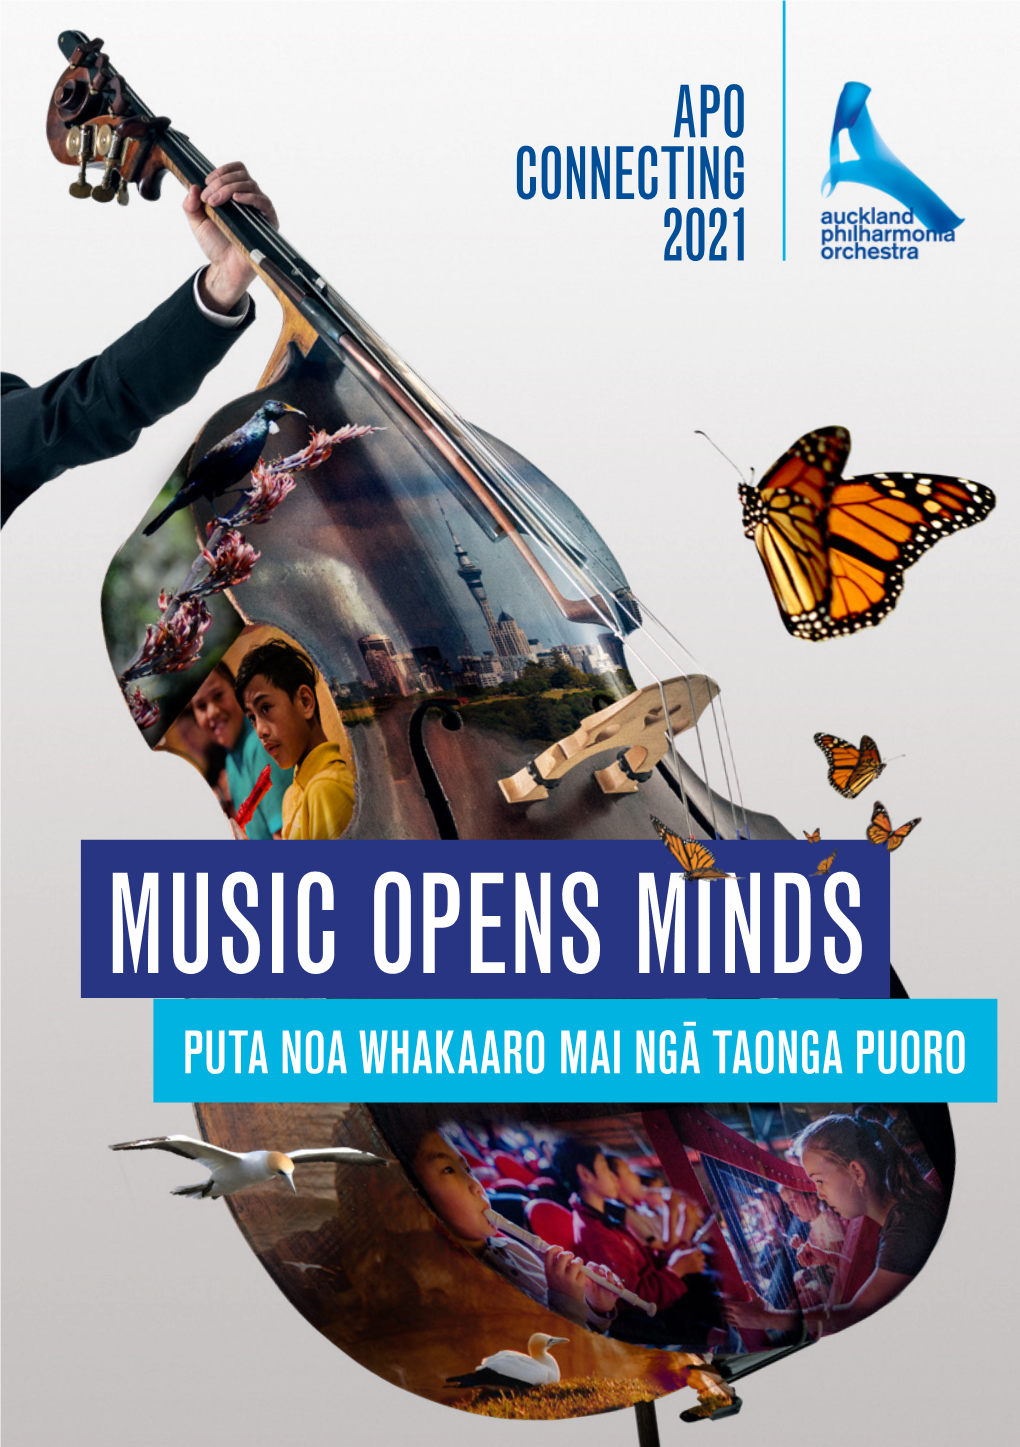 Music Opens Minds Puta Noa Whakaaro Mai Ngā Taonga Puoro Apo Connecting Last Year